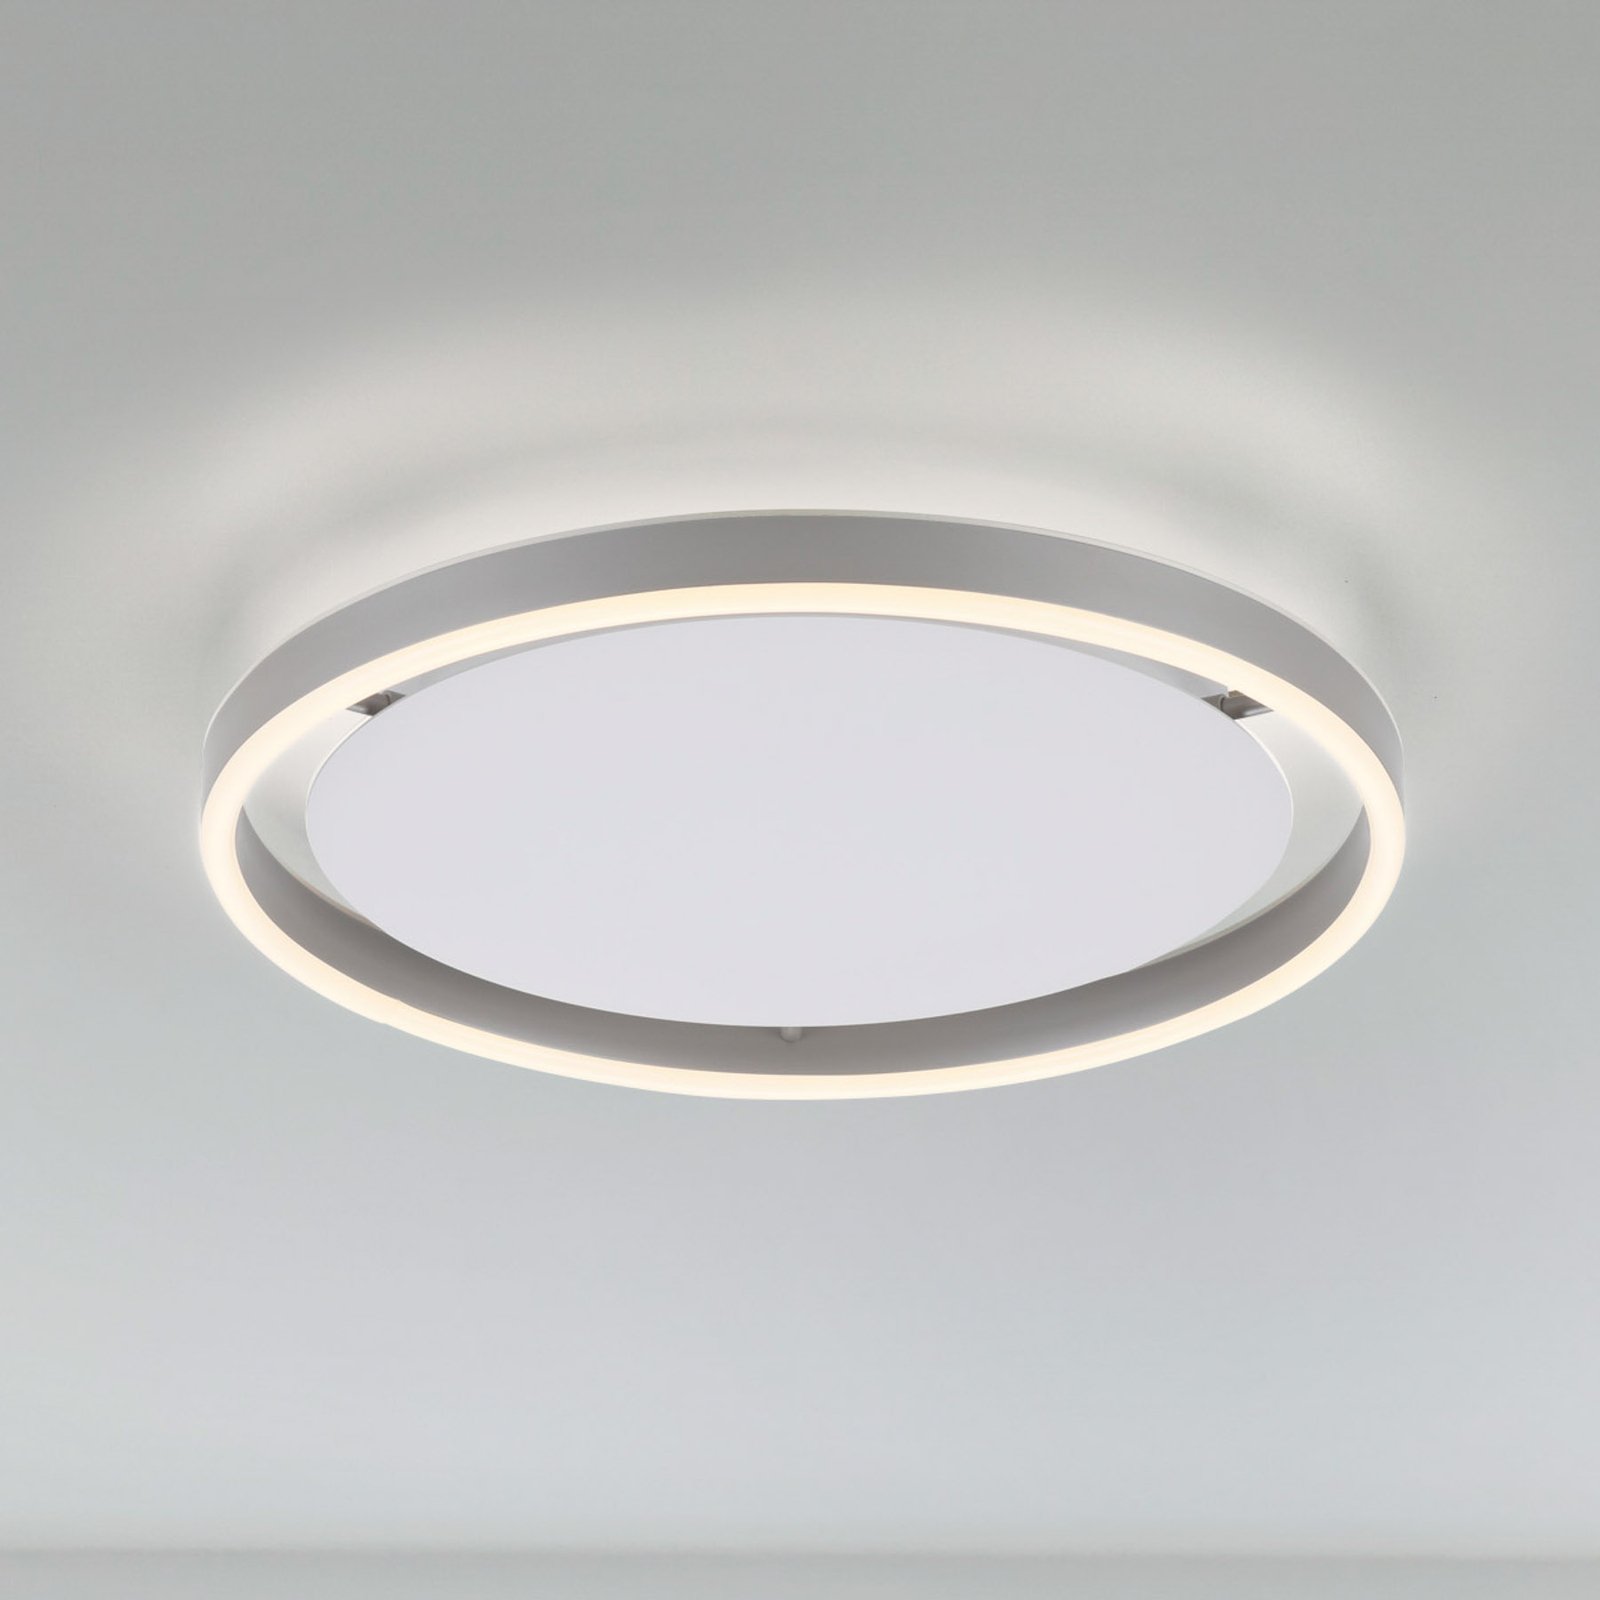 LED plafondlamp Ritus, Ø 39,3cm, aluminium